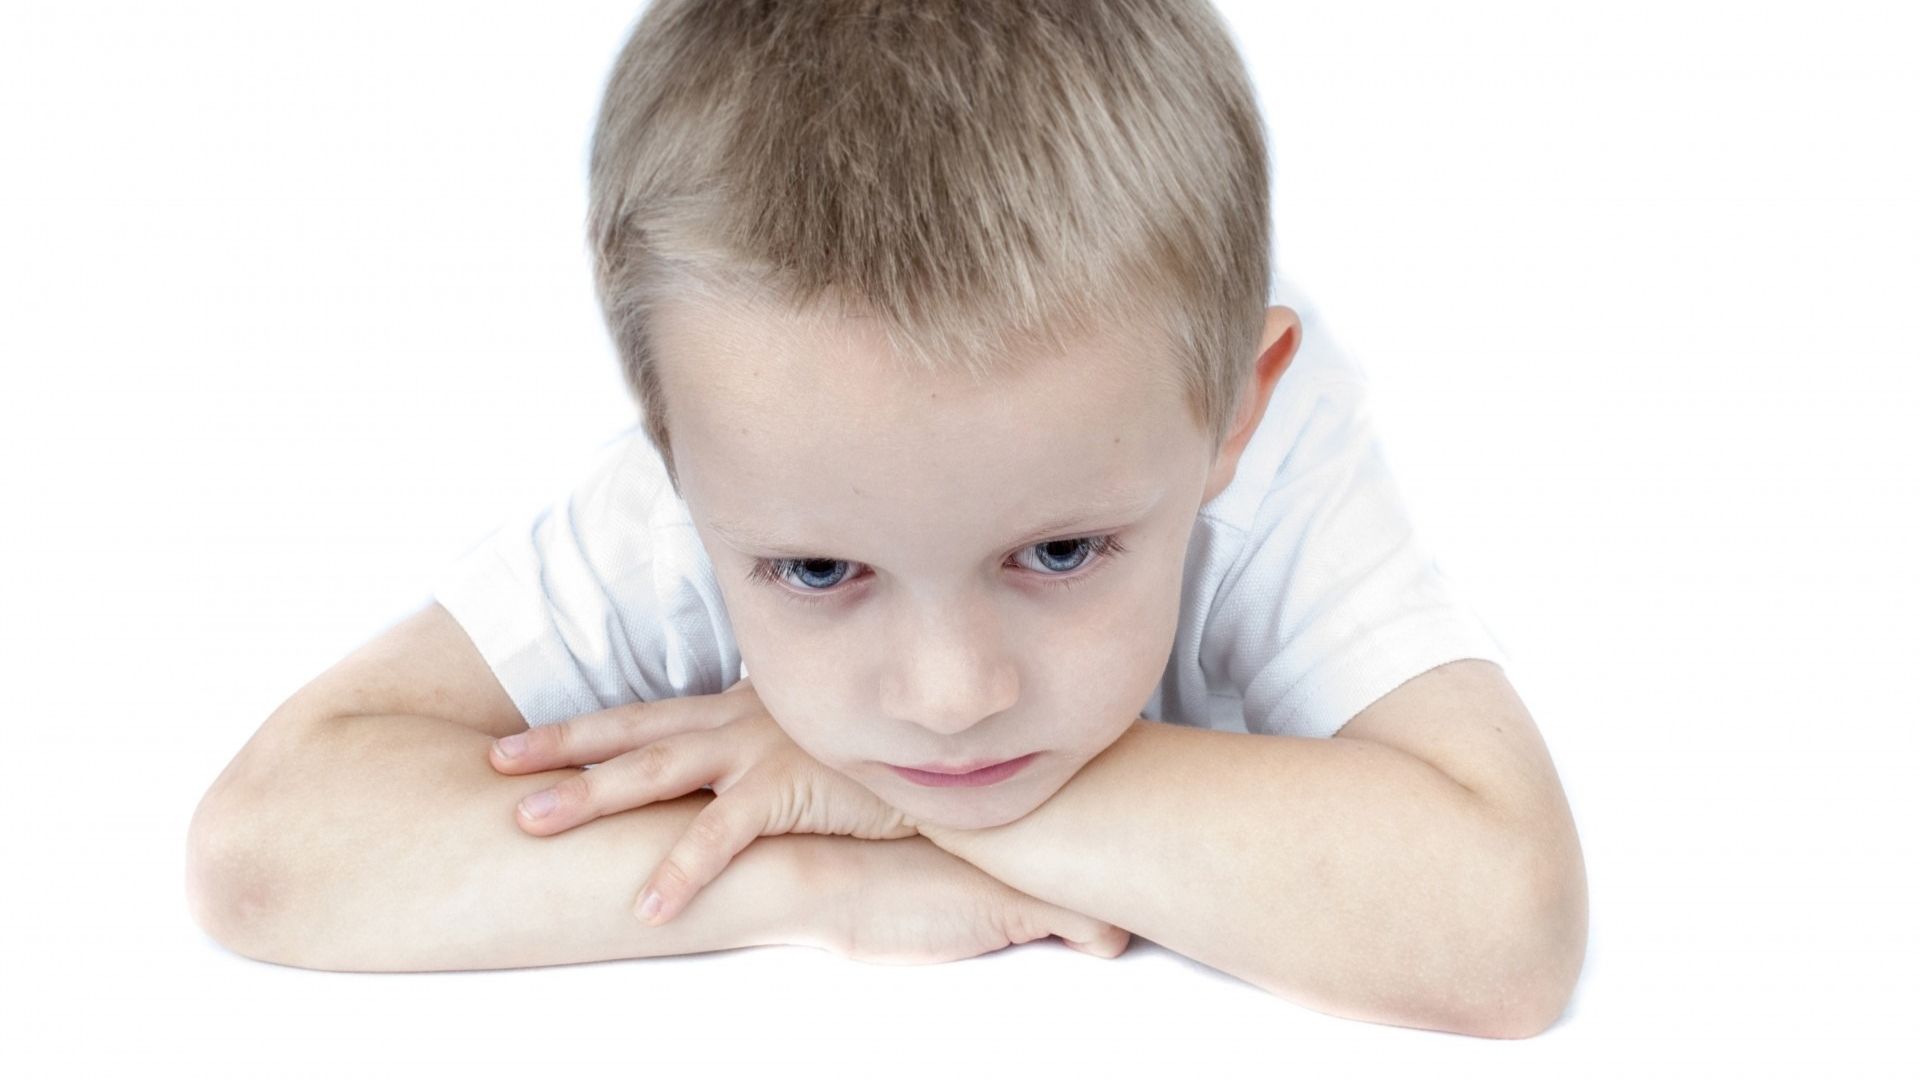 Isoler un enfant : une punition humiliante ?